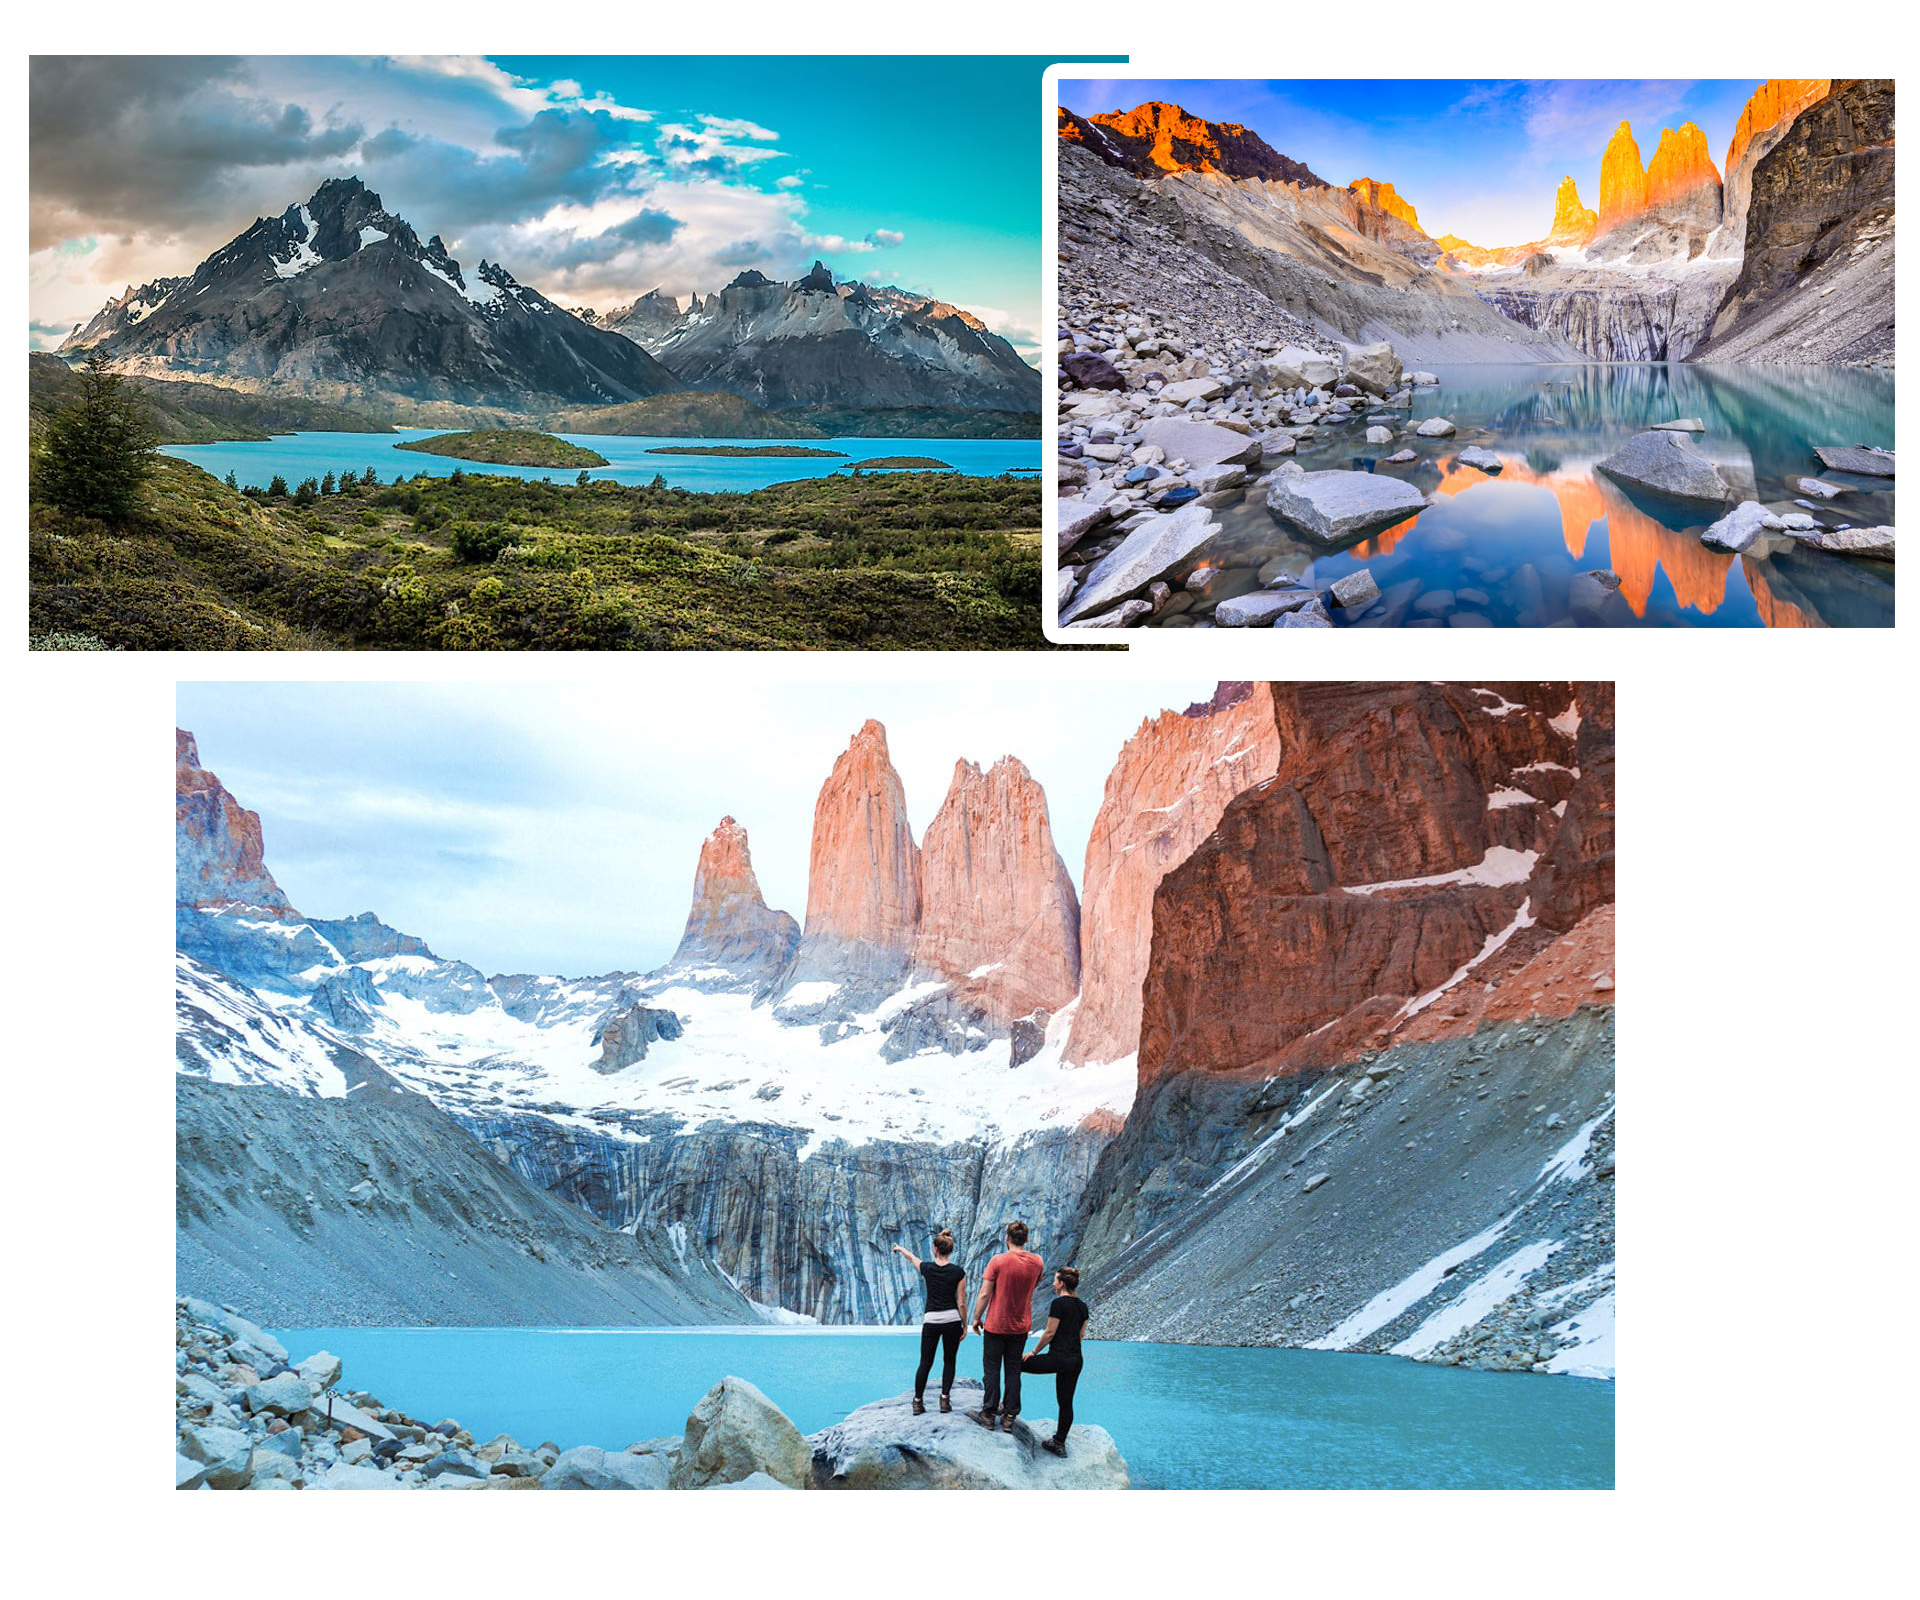 Thám hiểm vùng đất đẹp nhất thế giới – Patagonia - 2